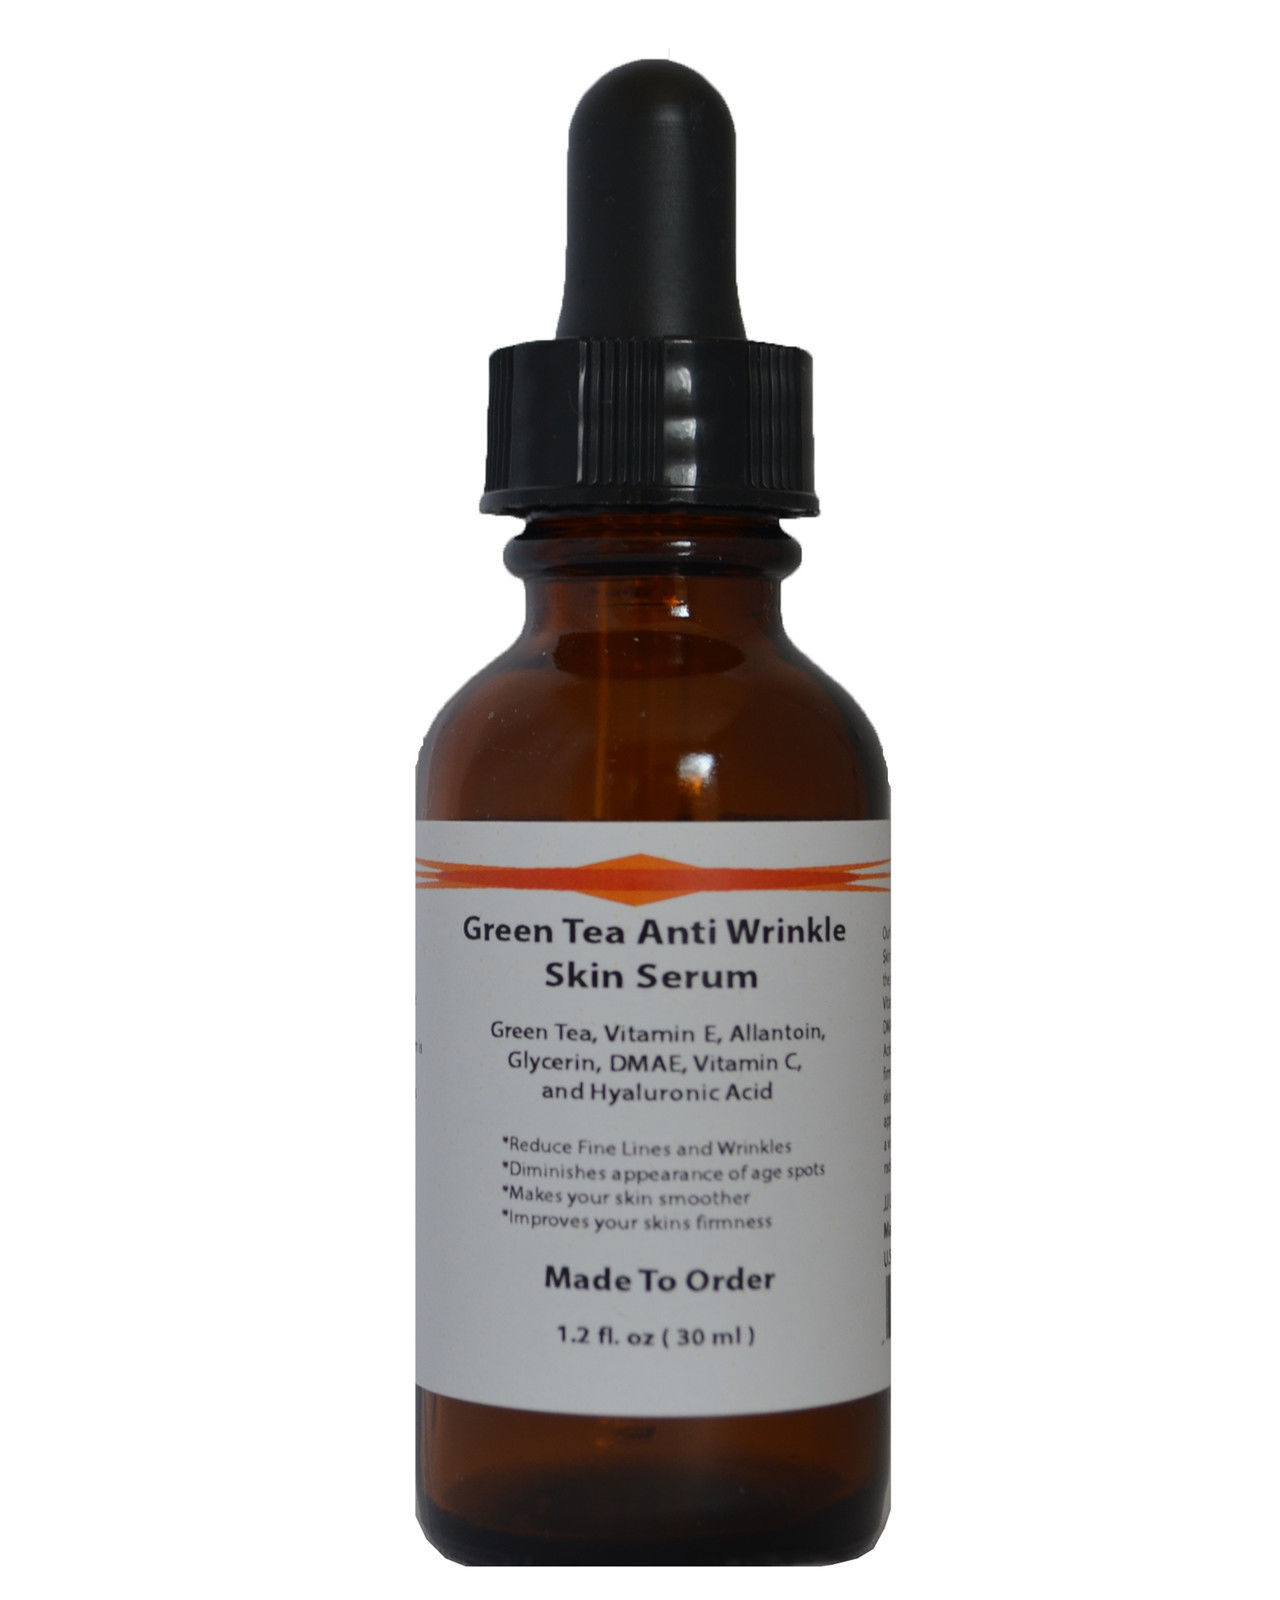 Green Tea Anti Wrinkle Skin Serum w/ DMAE,Vit.C,E, Allantoin, Glycerin and HA - $16.78 - $26.68